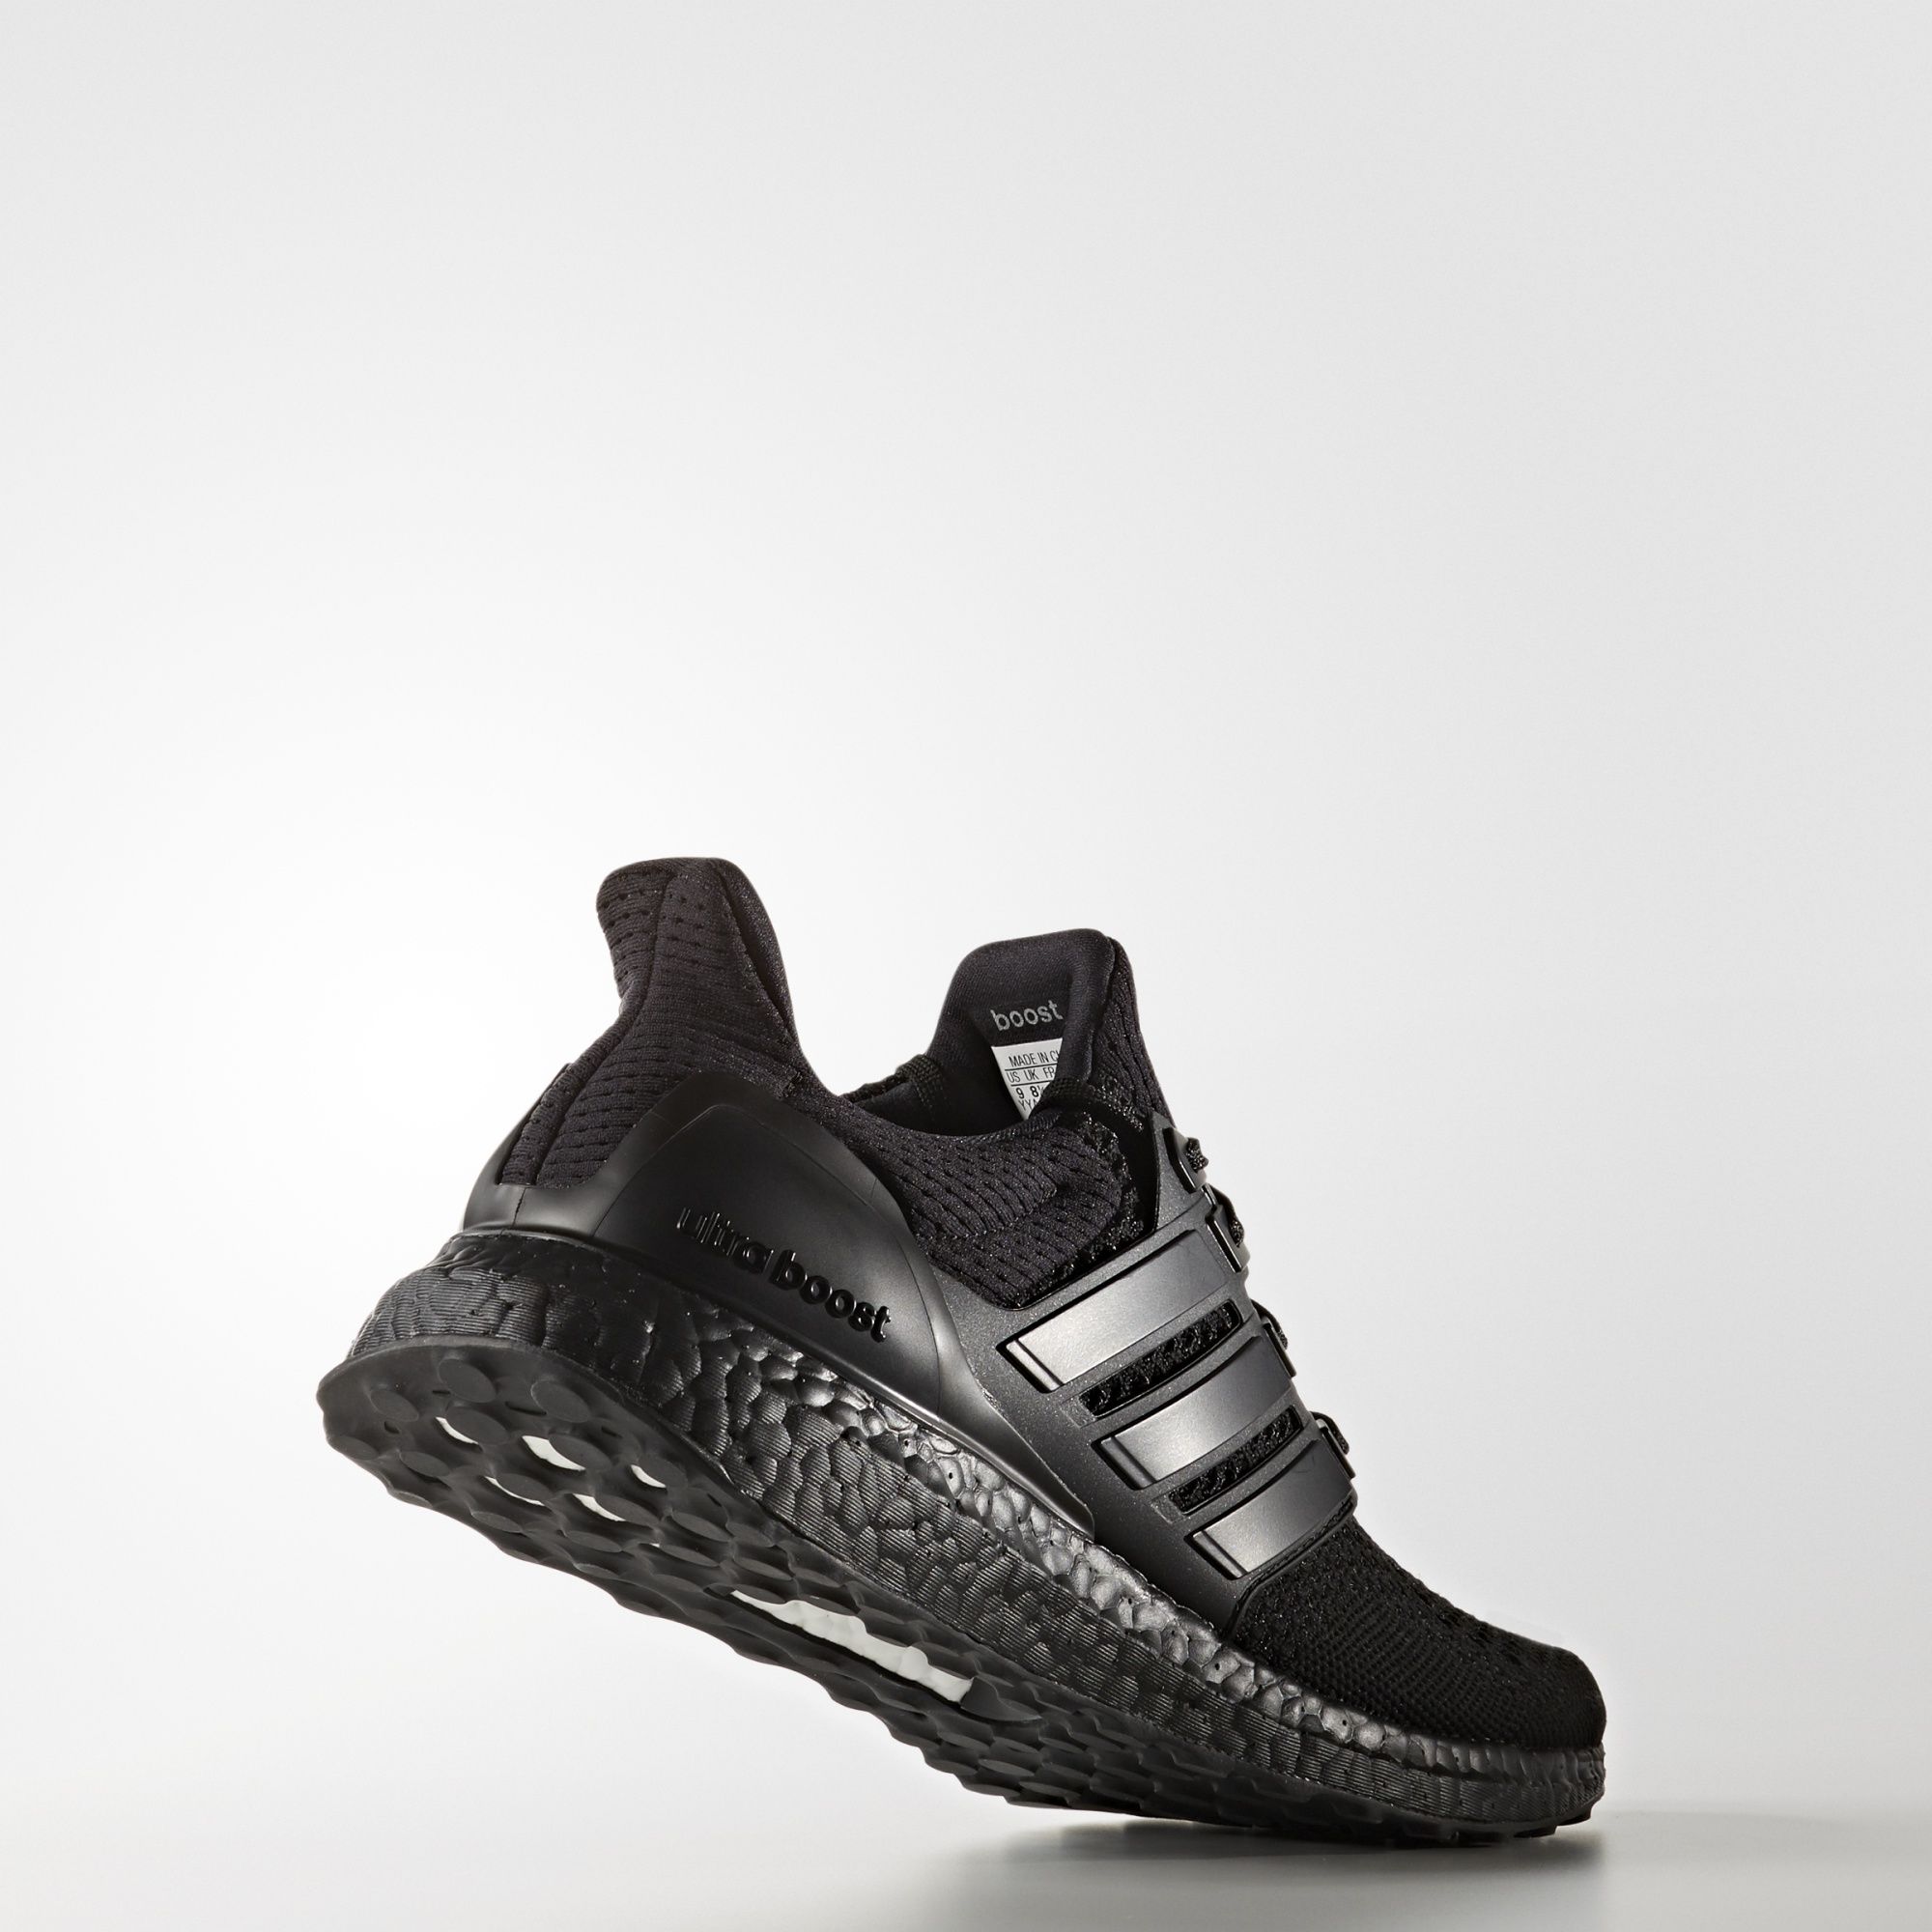 Adidas Ultra Boost LTD
« Triple Black »